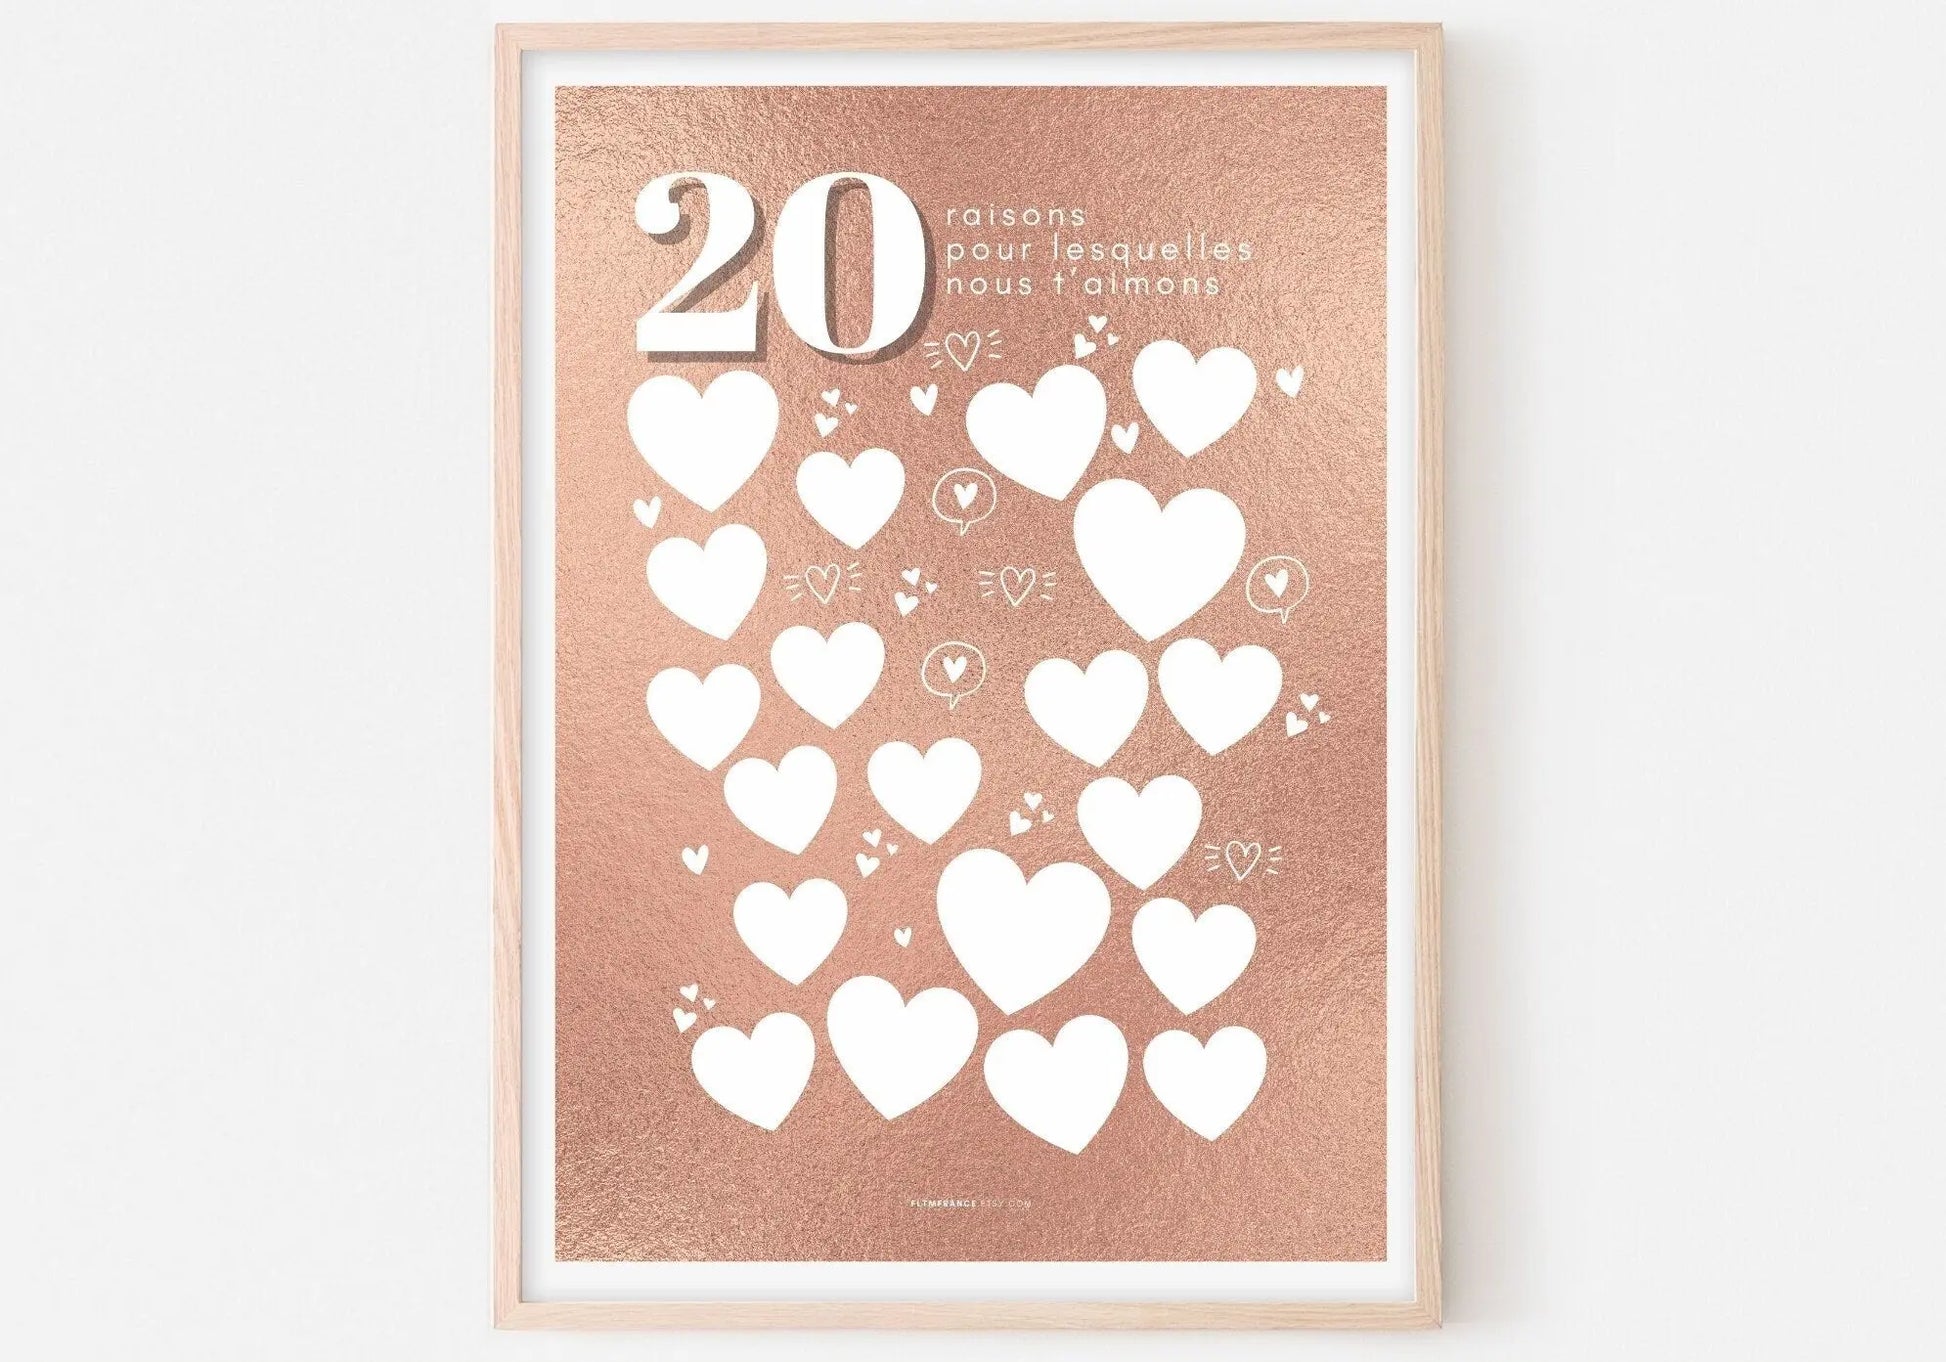 Affiche fond pink gold 20 raisons pour lesquelles nous t’aimons - Anniversaire 20 ans FLTMfrance